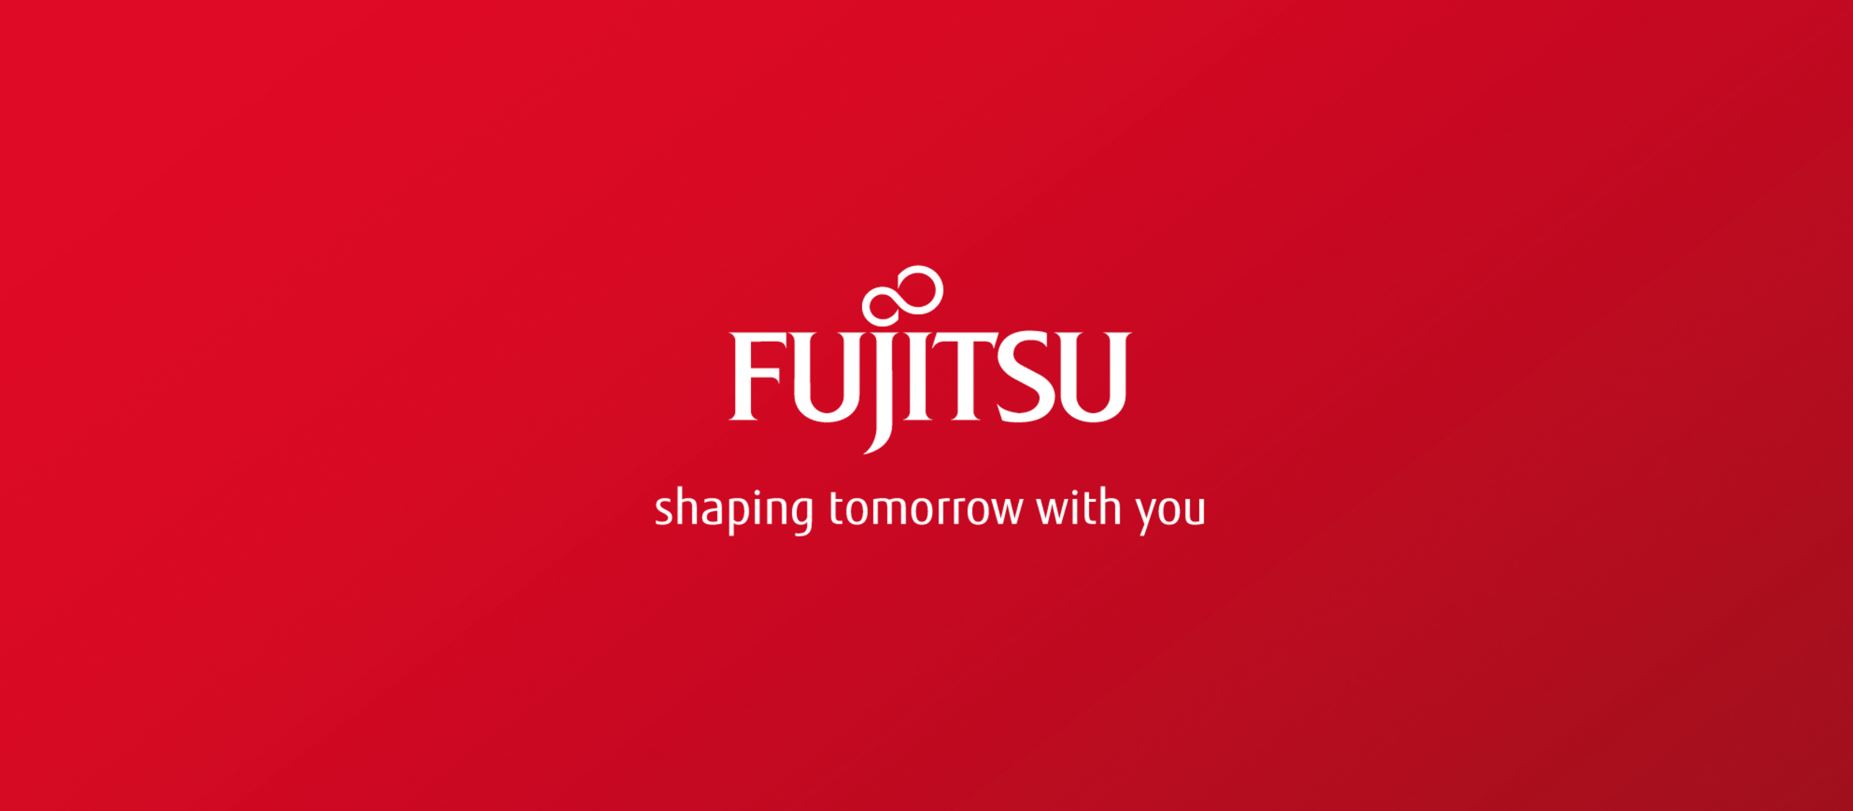 Fujitsu reduce a la mitad el espacio de oficina para la nueva normalidad